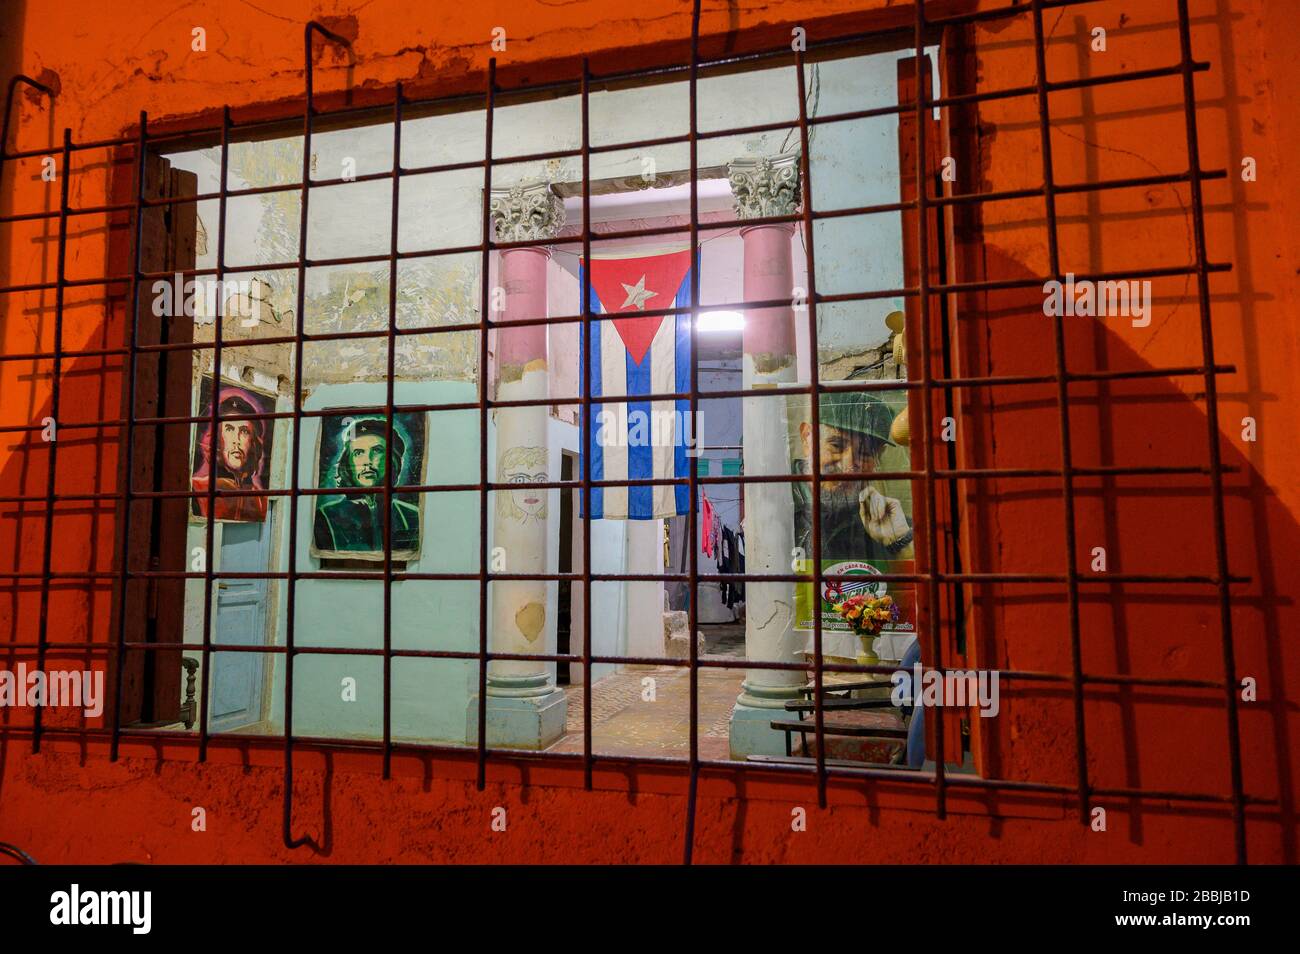 Vue intérieure depuis la rue, avec des images de Che Guevera et Fidell Castro, la Havane Vieja, Cuba Banque D'Images